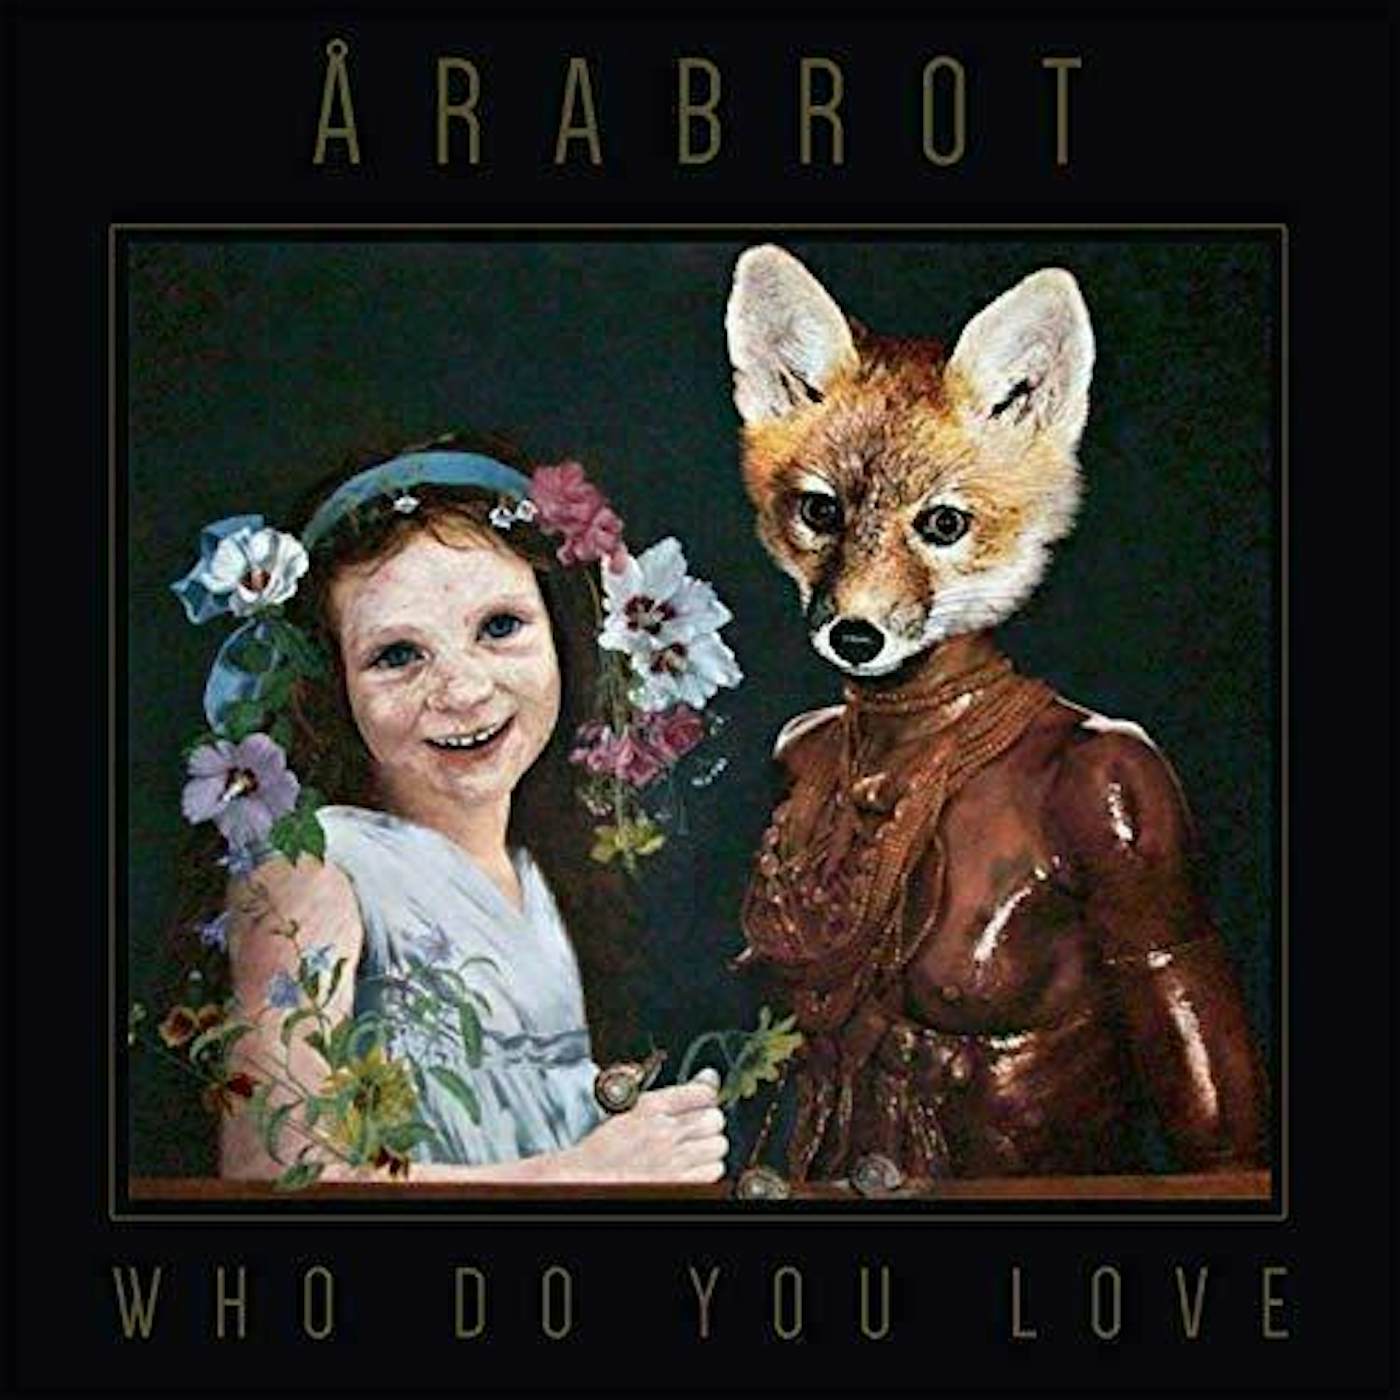 Årabrot Who do you love Vinyl Record